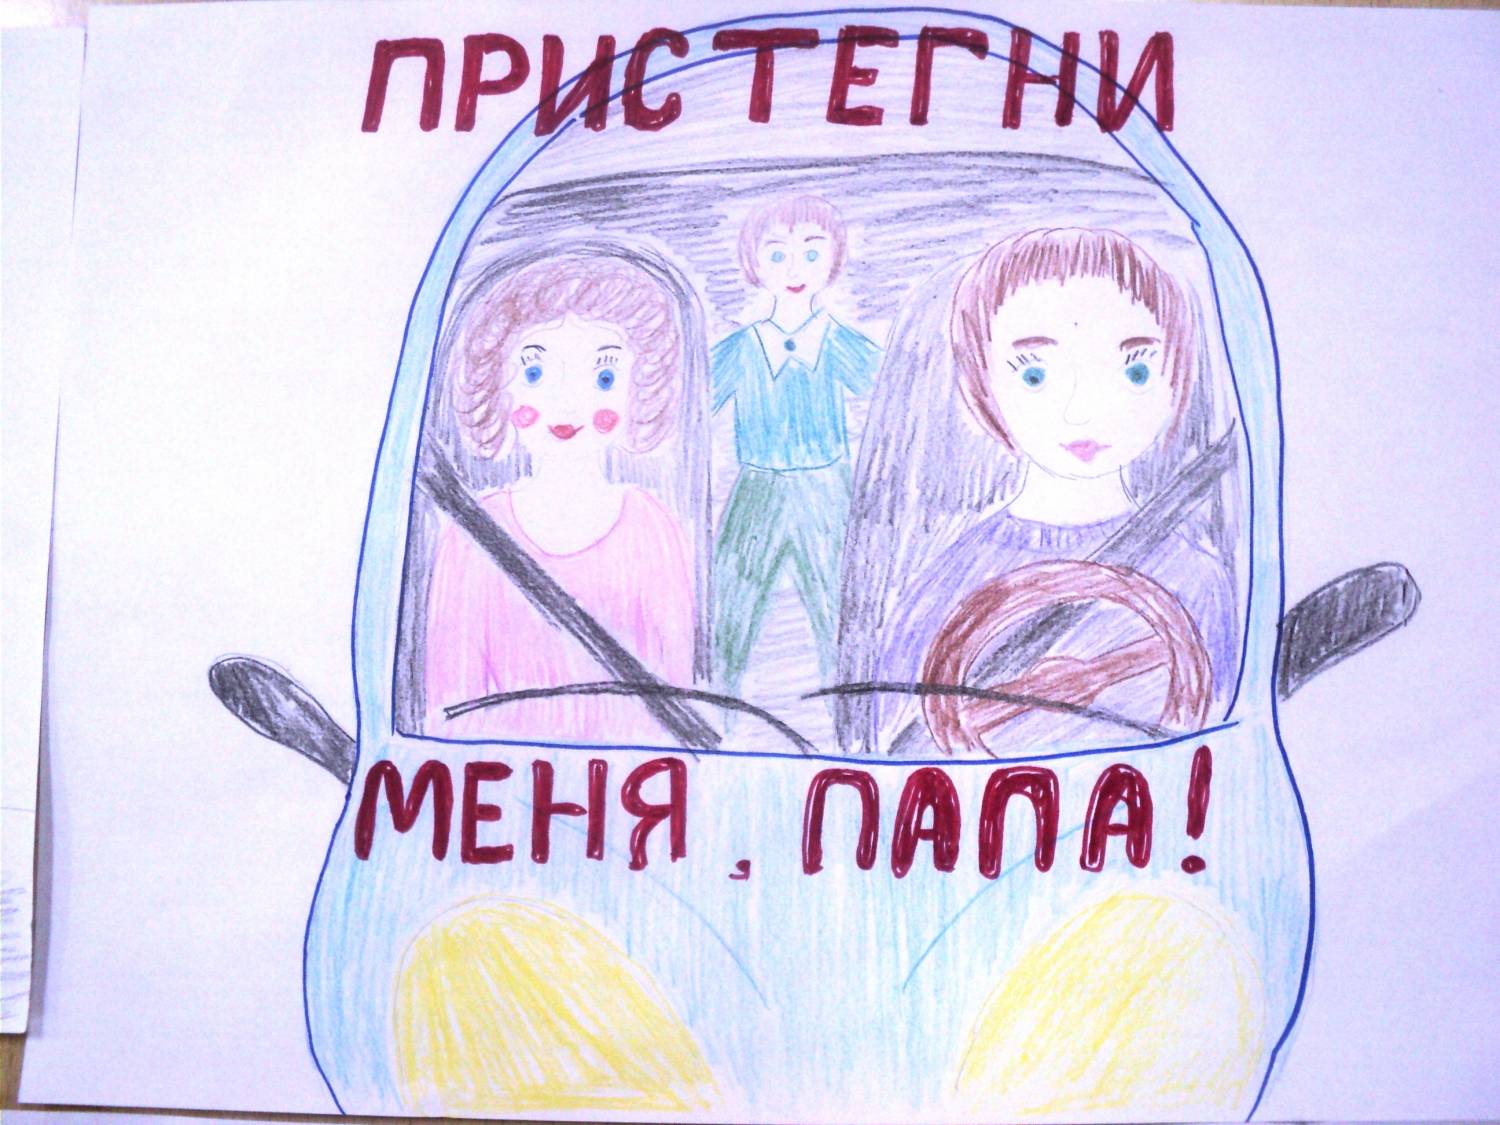 Плакат призывающий к соблюдению. Ребёнок главный пассажир рисунок. Плакат призывающий к соблюдению правил безопасности в транспорте. Рисунок на тему ребенок главный пассажир. Плакат кобоюдение правилбезопвсности в траснпопте.